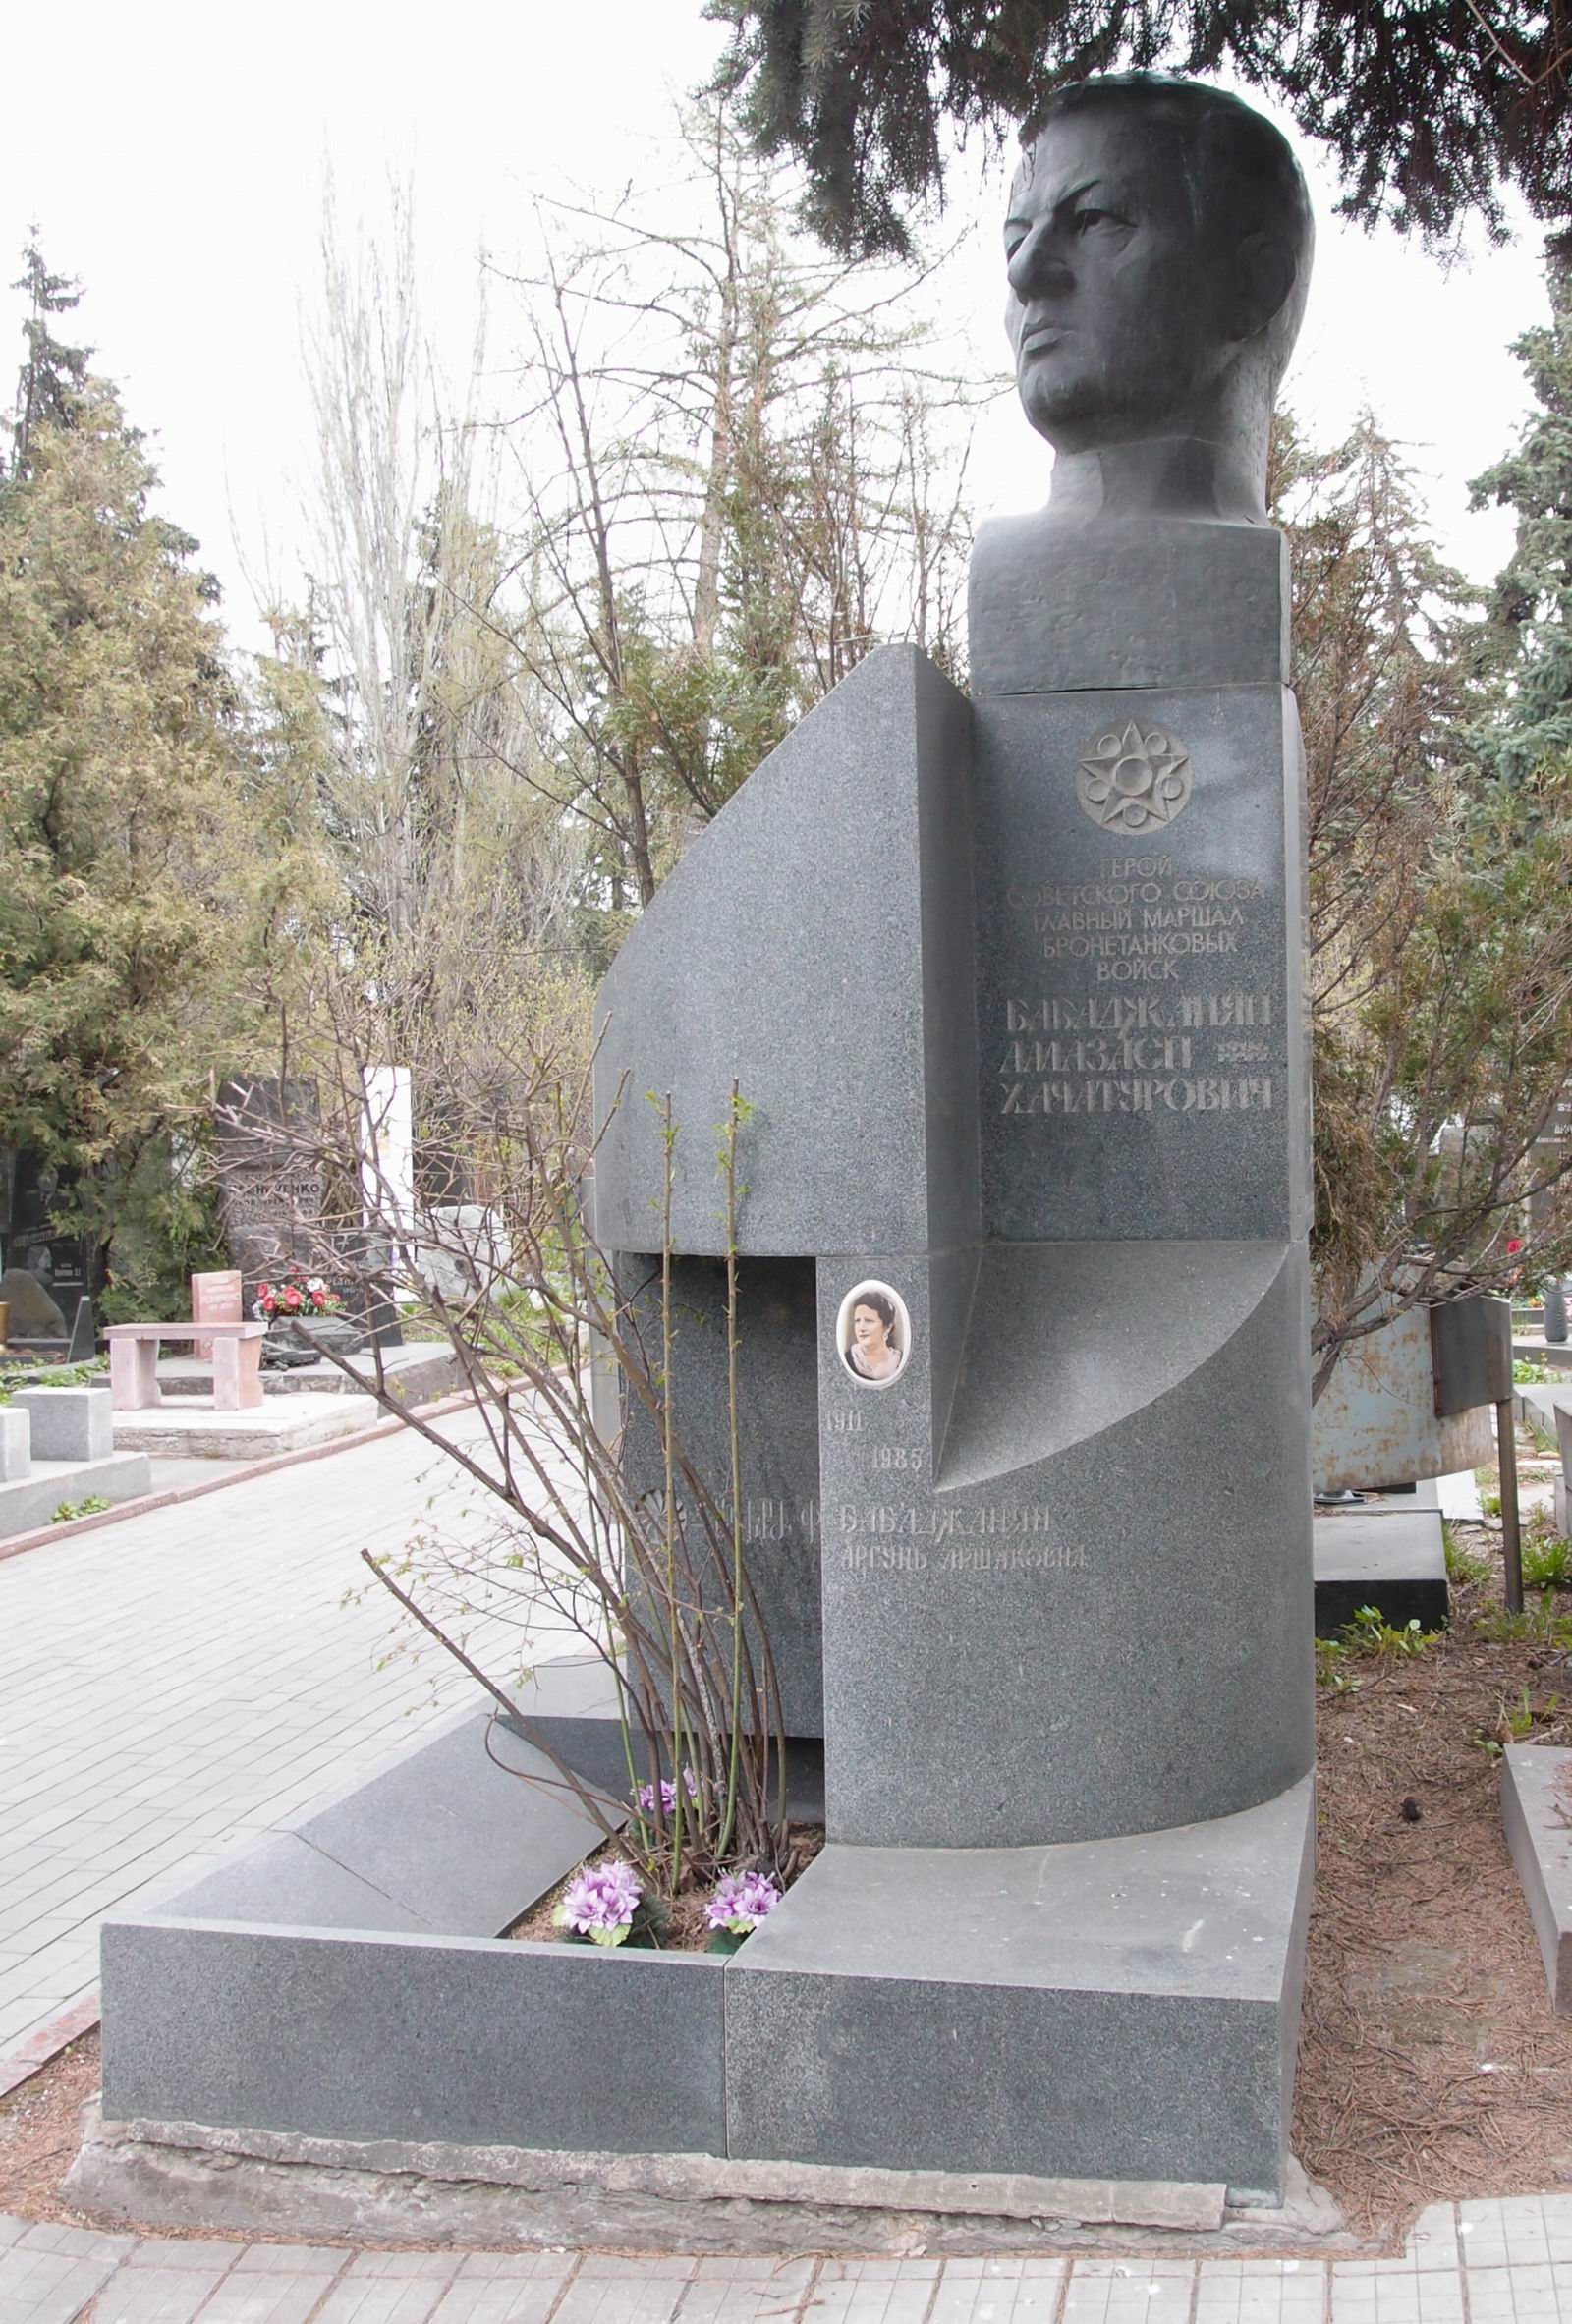 Памятник на могиле Бабаджаняна А.Х. (1906-1977), ск. А.Шираз, Р.Джулакян, арх. К.Сейланов, на Новодевичьем кладбище (7-14-12). Нажмите левую кнопку мыши чтобы увидеть фрагмент памятника.